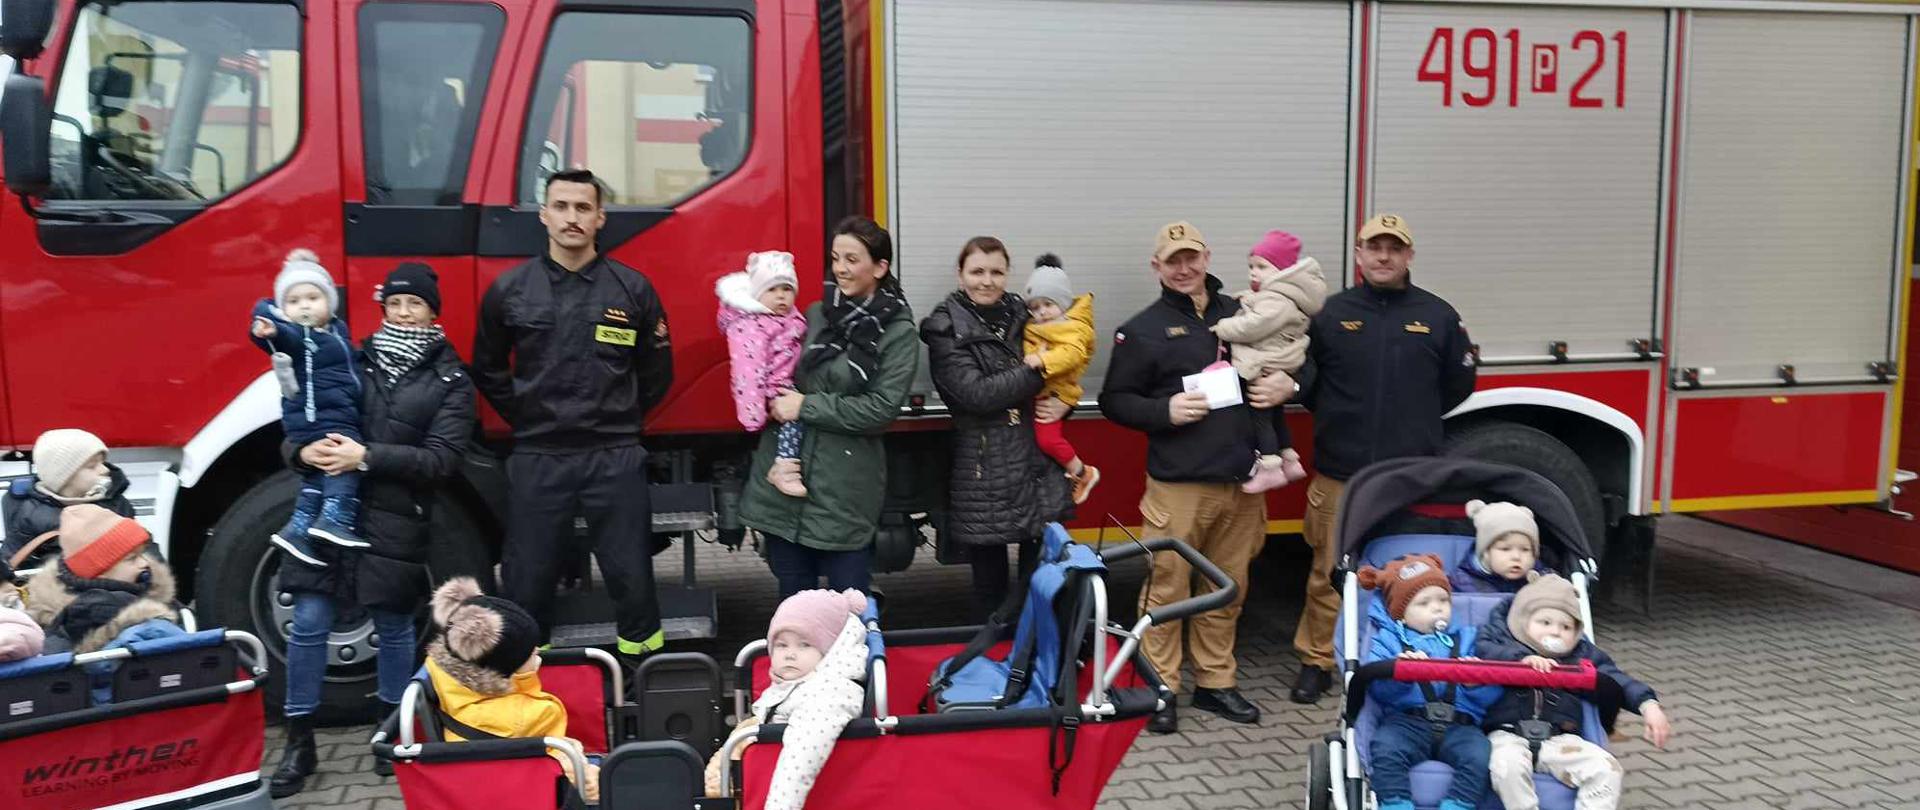 Zdjęcie przedstawia dzieci wraz z opiekunami i strażakami na tle pojazdu pożarniczego